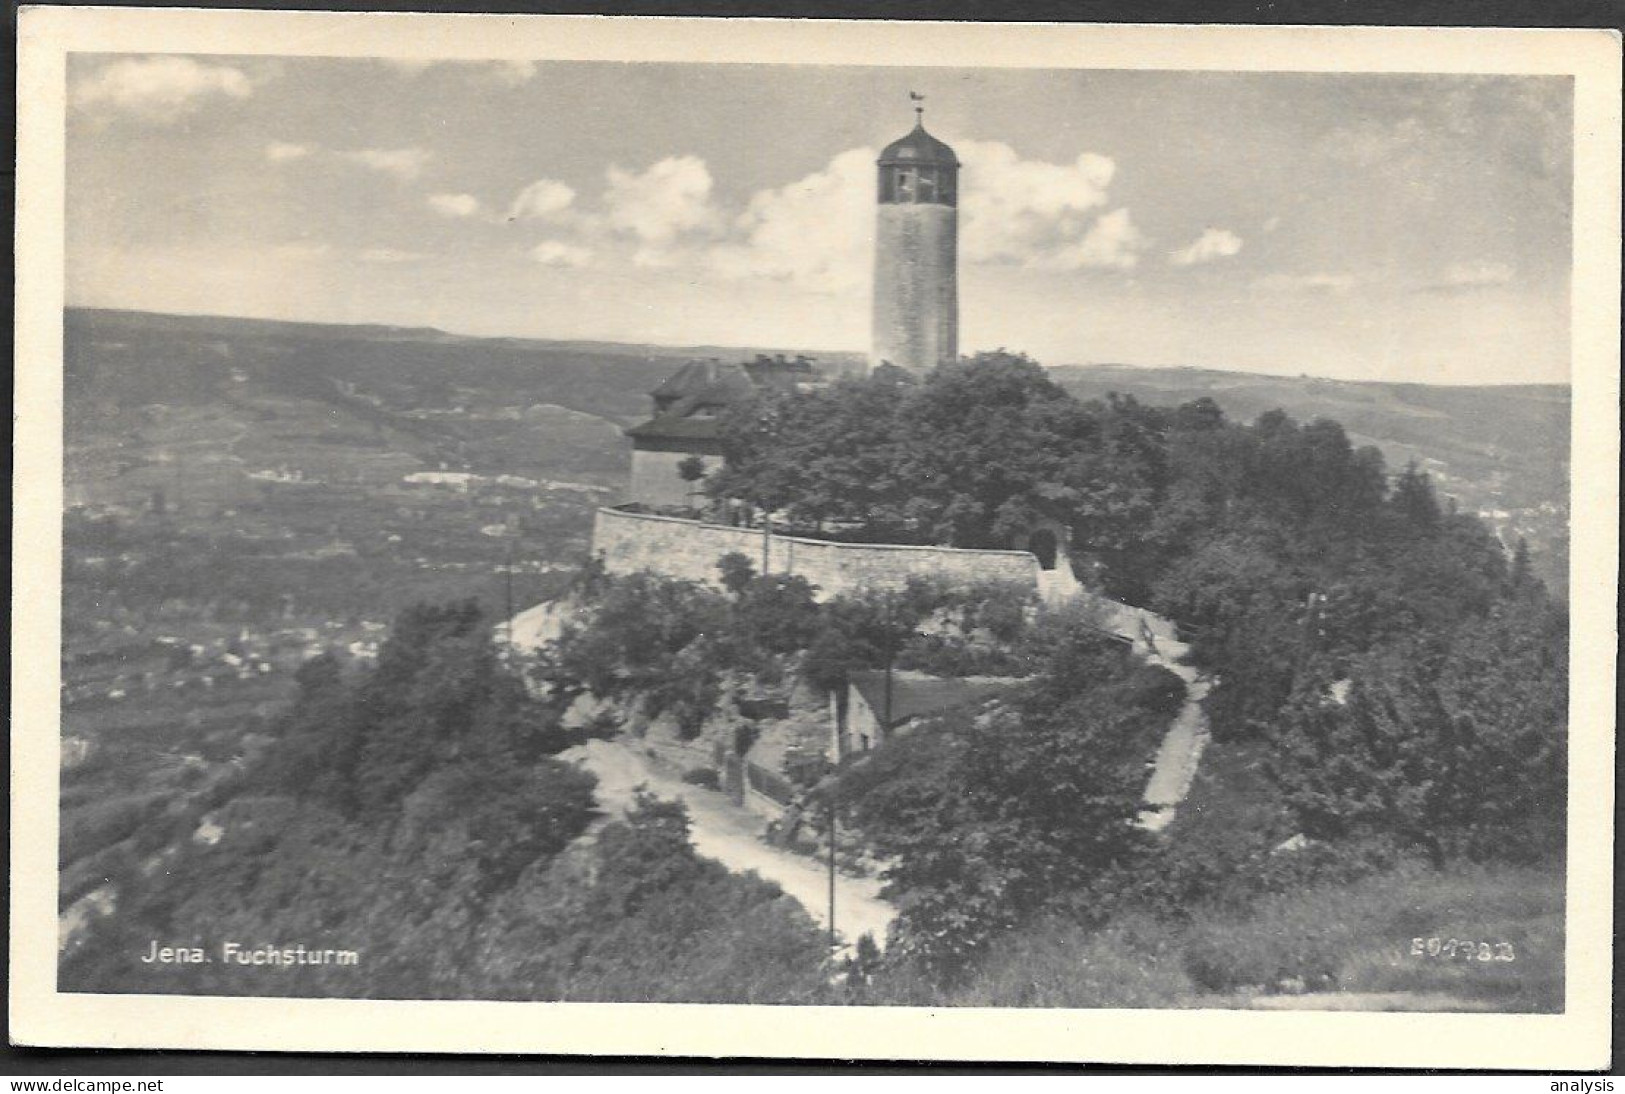 Germany Jena Fuchsturm Old Real Photo PC 1952 Mailed - Jena